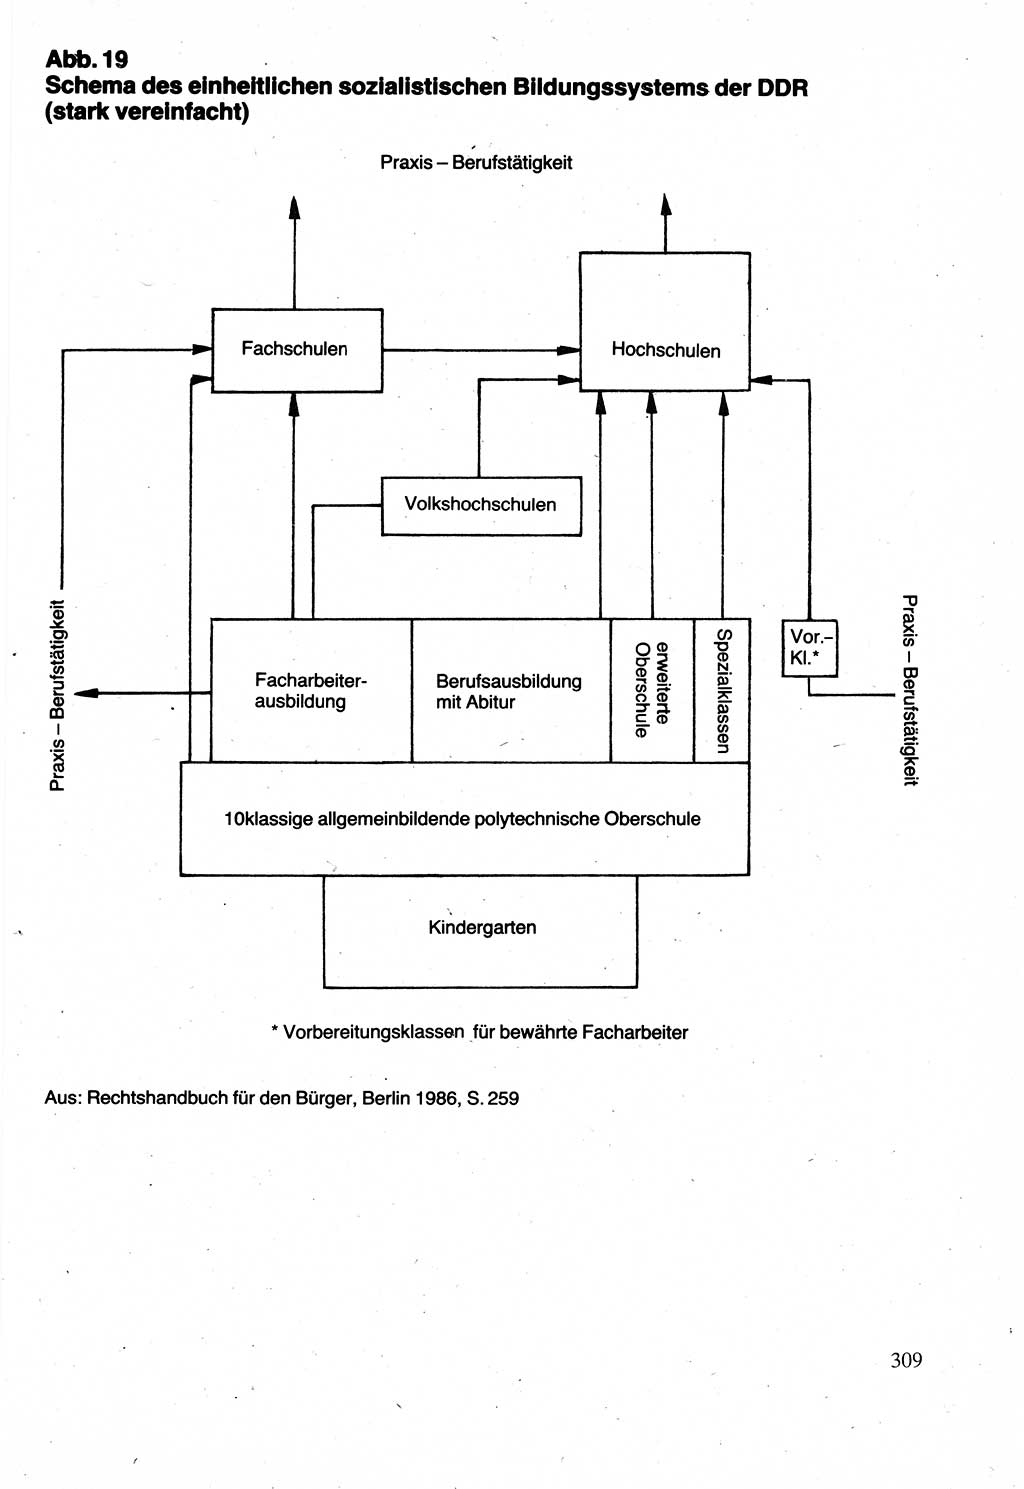 Verwaltungsrecht [Deutsche Demokratische Republik (DDR)], Lehrbuch 1988, Seite 309 (Verw.-R. DDR Lb. 1988, S. 309)